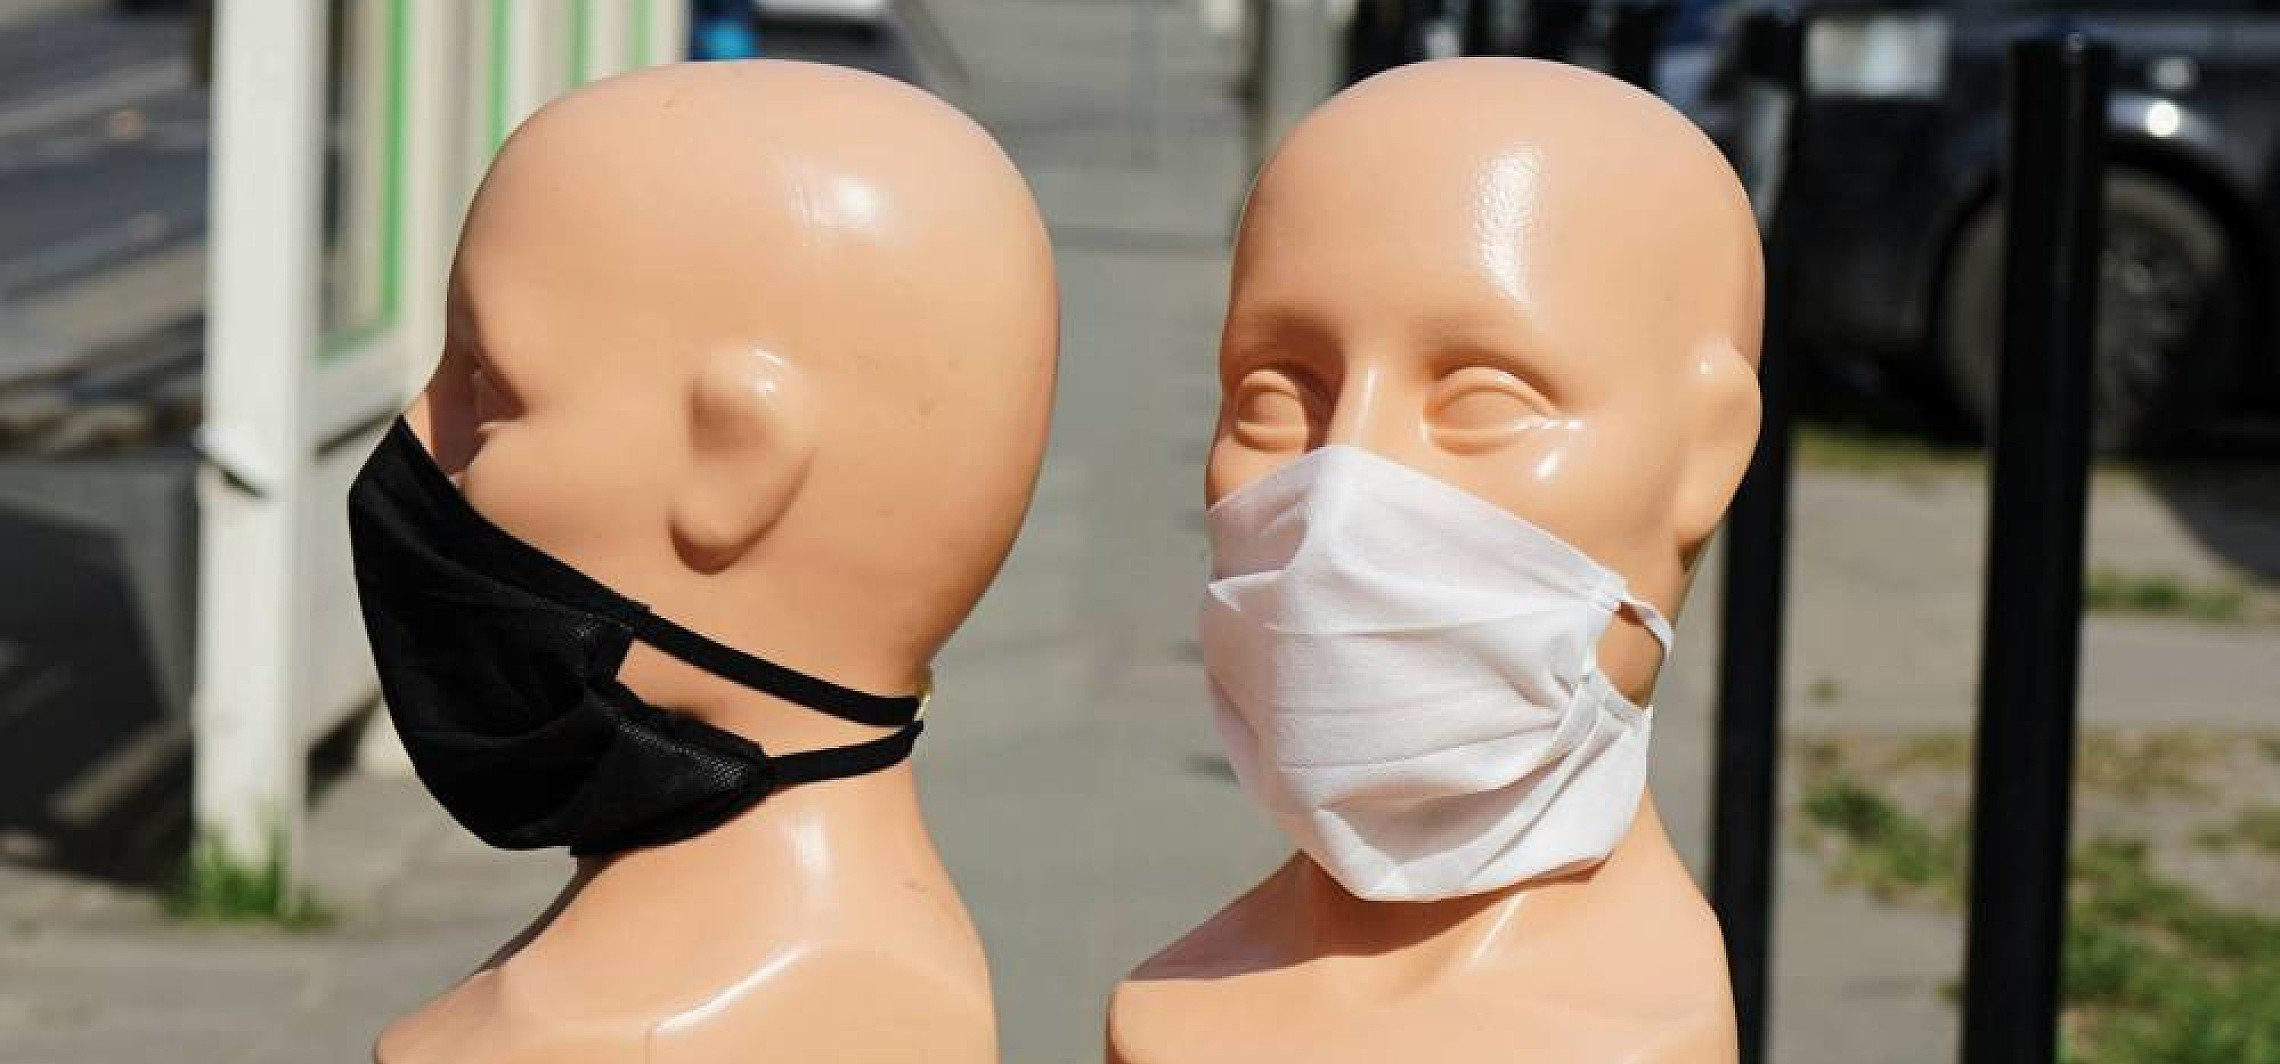 Kraj - Resort zdrowia opublikował projekt uszczegółowiający zasady zakrywania ust i nosa 